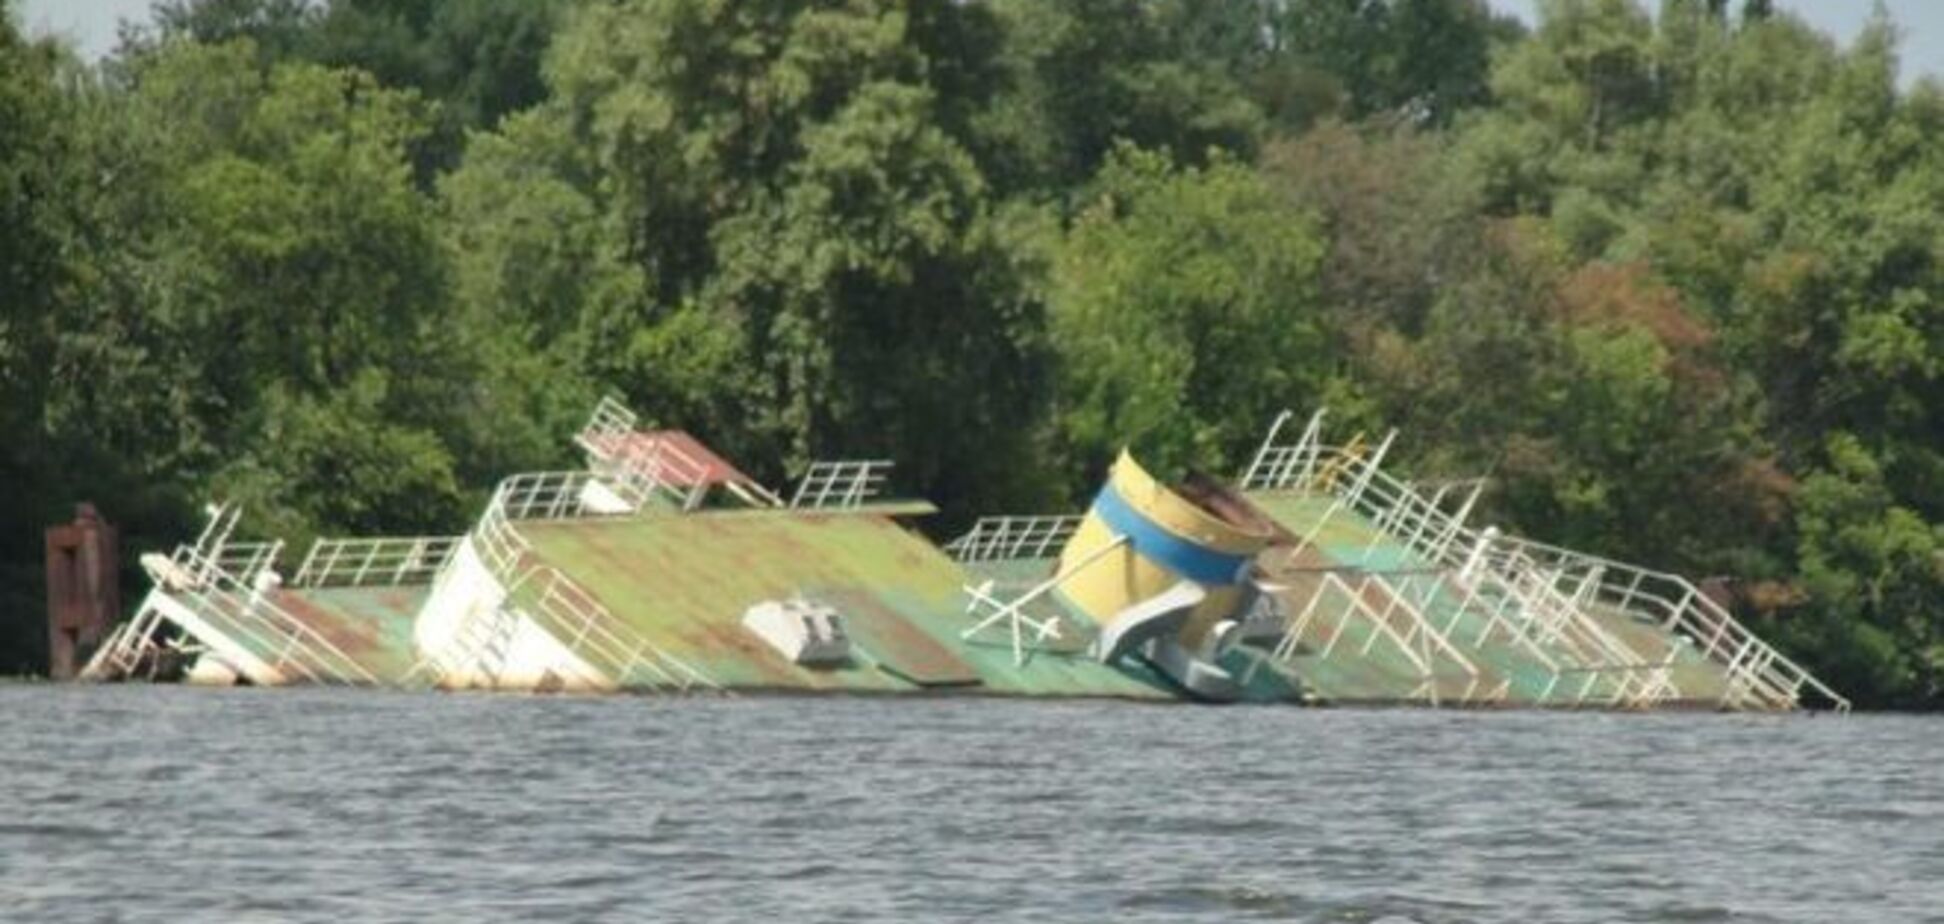 Де в Києві виявити затонулі кораблі: фотофакт